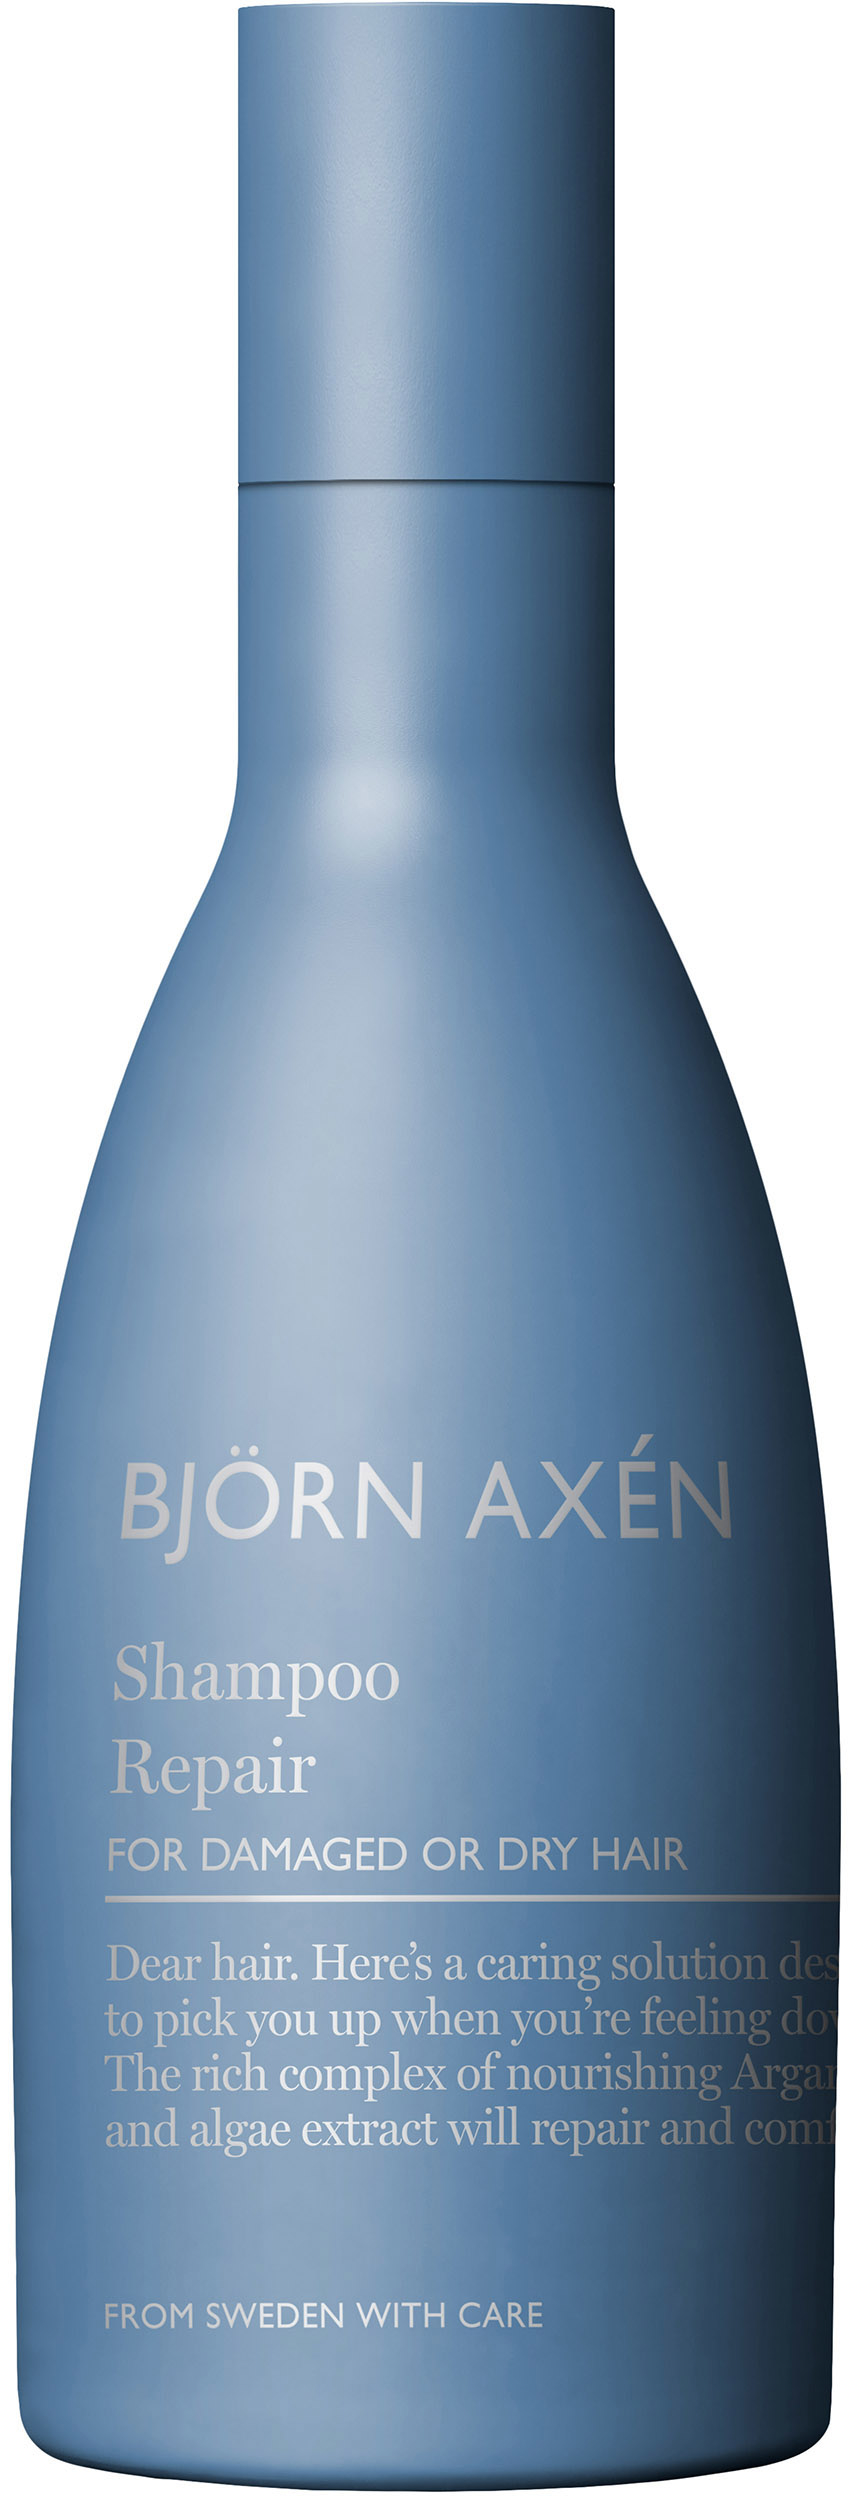 Björn Axén Repair shampoo 250 ml